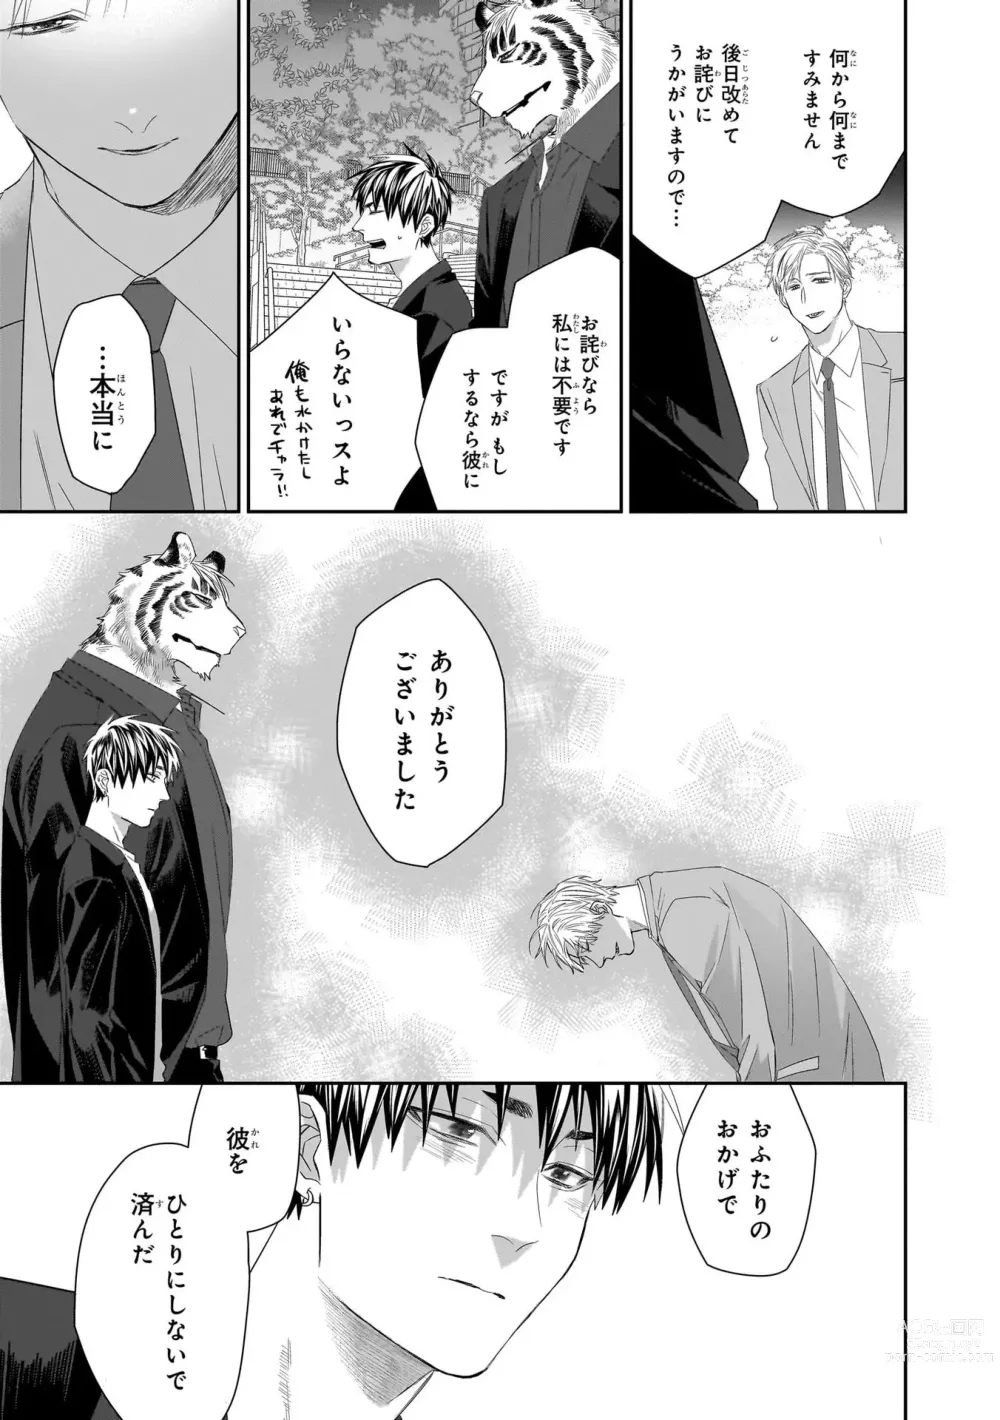 Page 200 of manga Torano Tantei Jimusho e Youkoso 1-5